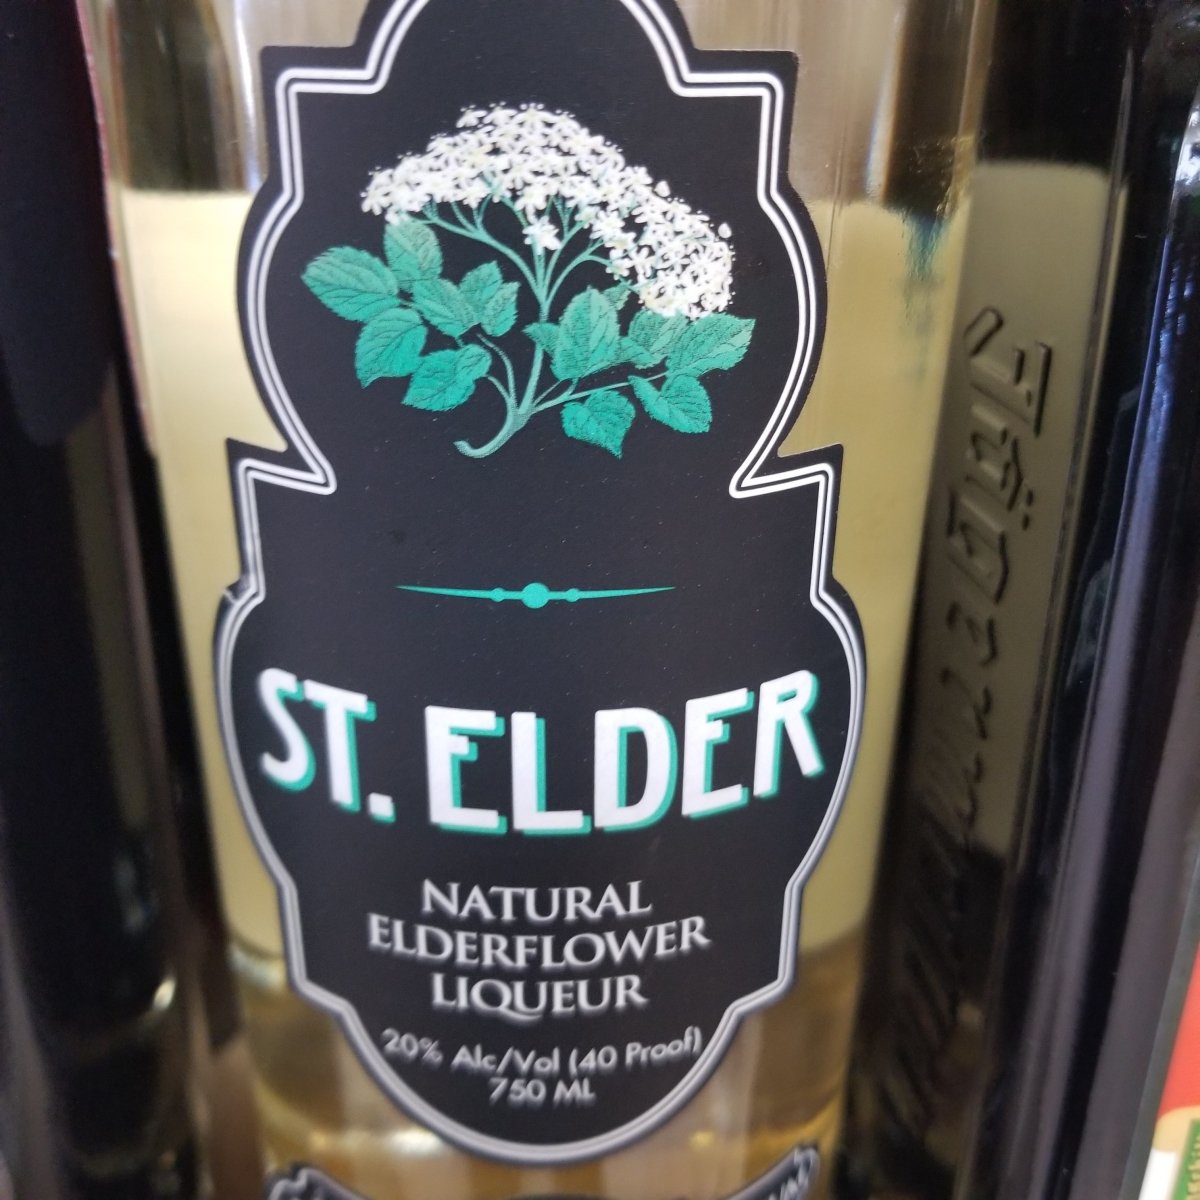 St Elder Elderflower 750ml (Better than St-Germain) - Sip &amp; Say